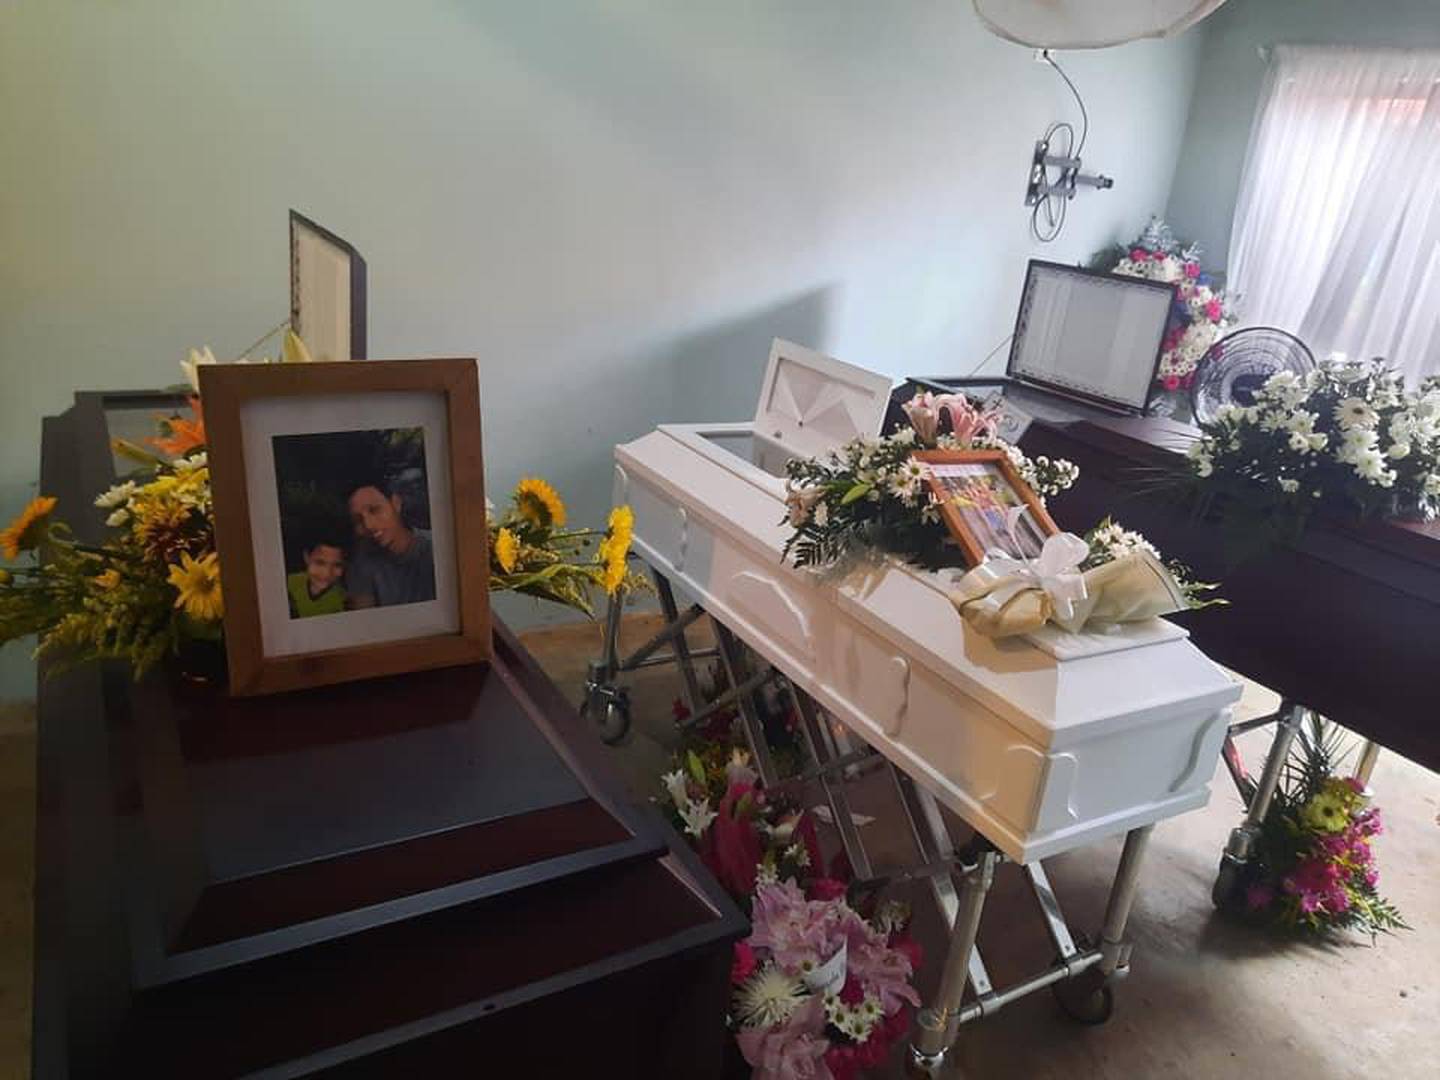 Funeral de padre y sus dos hijos que fallecieron a consecuencia de choque ocurrido en Cartagena de Santa Cruz. Foto cortesía Noti Cartagena.